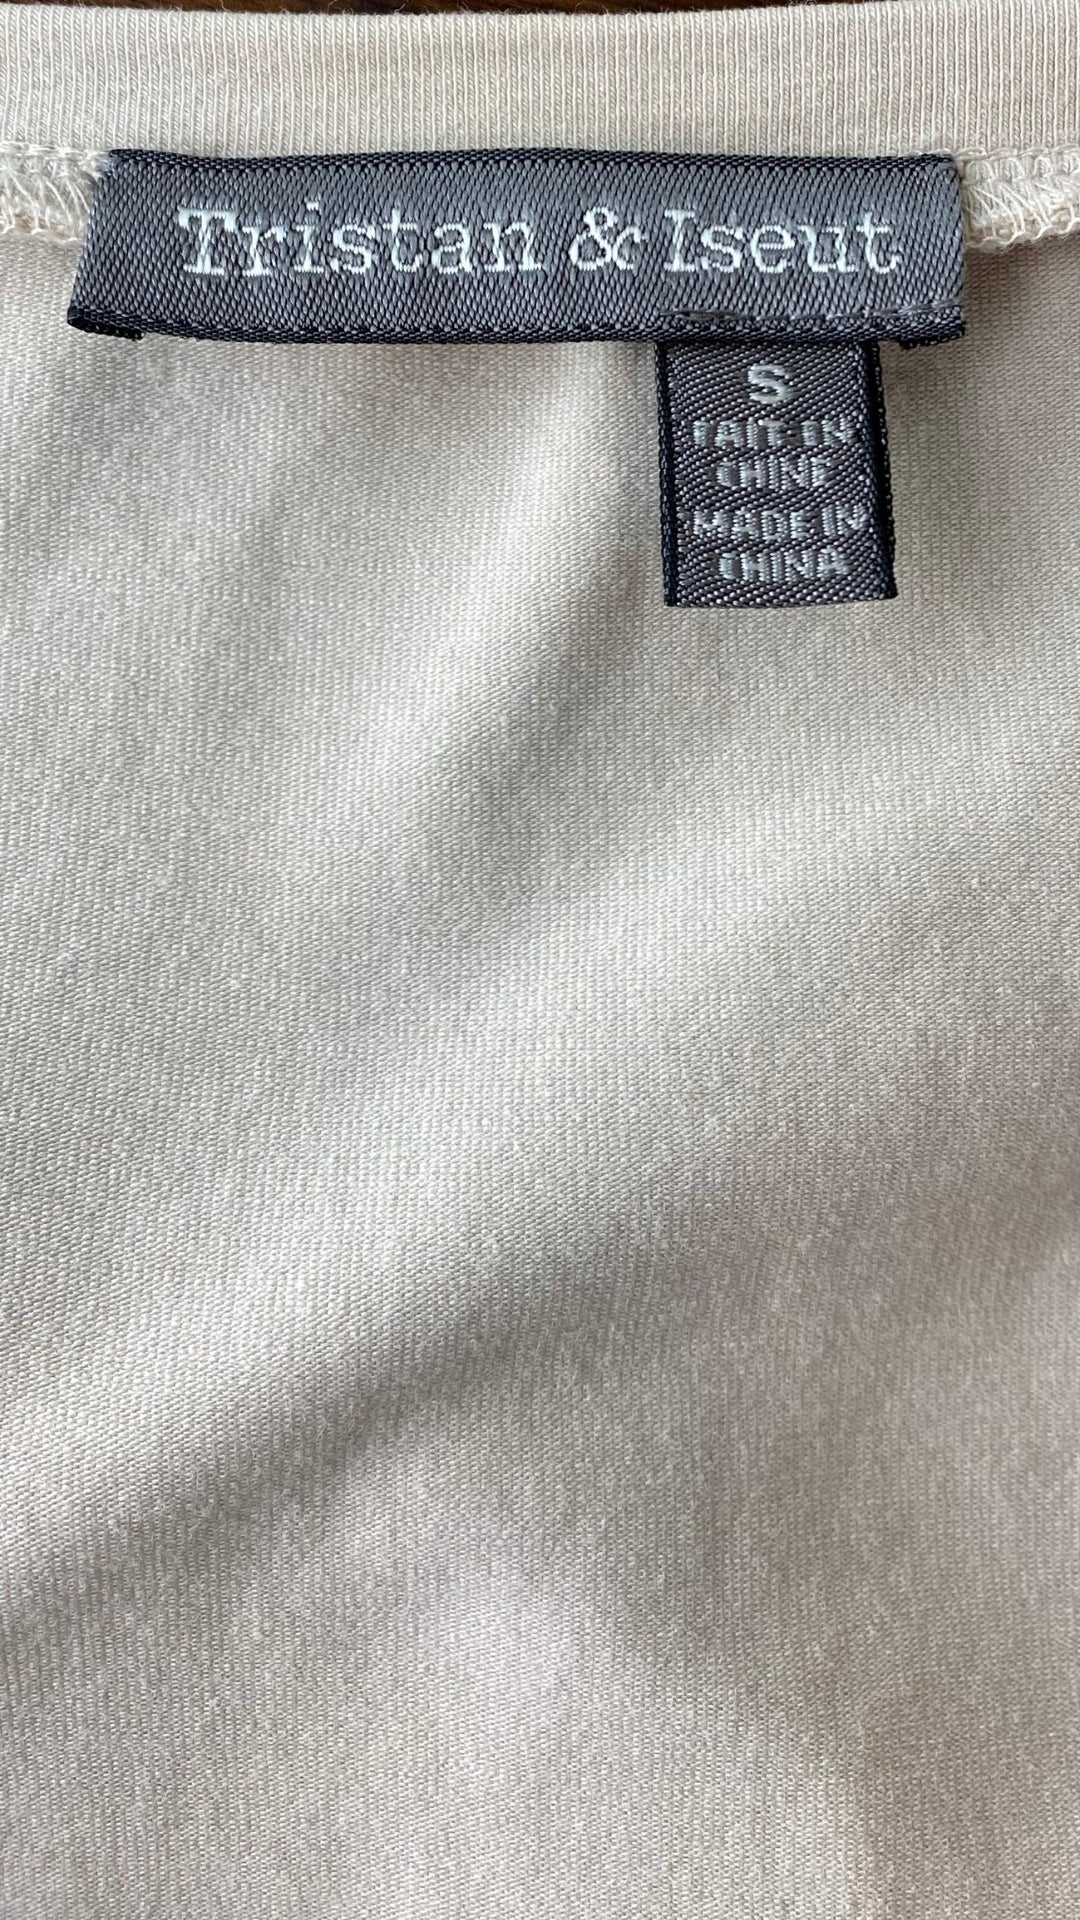 Robe greige bi-matière avec poches Tristan & Iseut, taille small. Vue de l'étiquette de marque et taille.